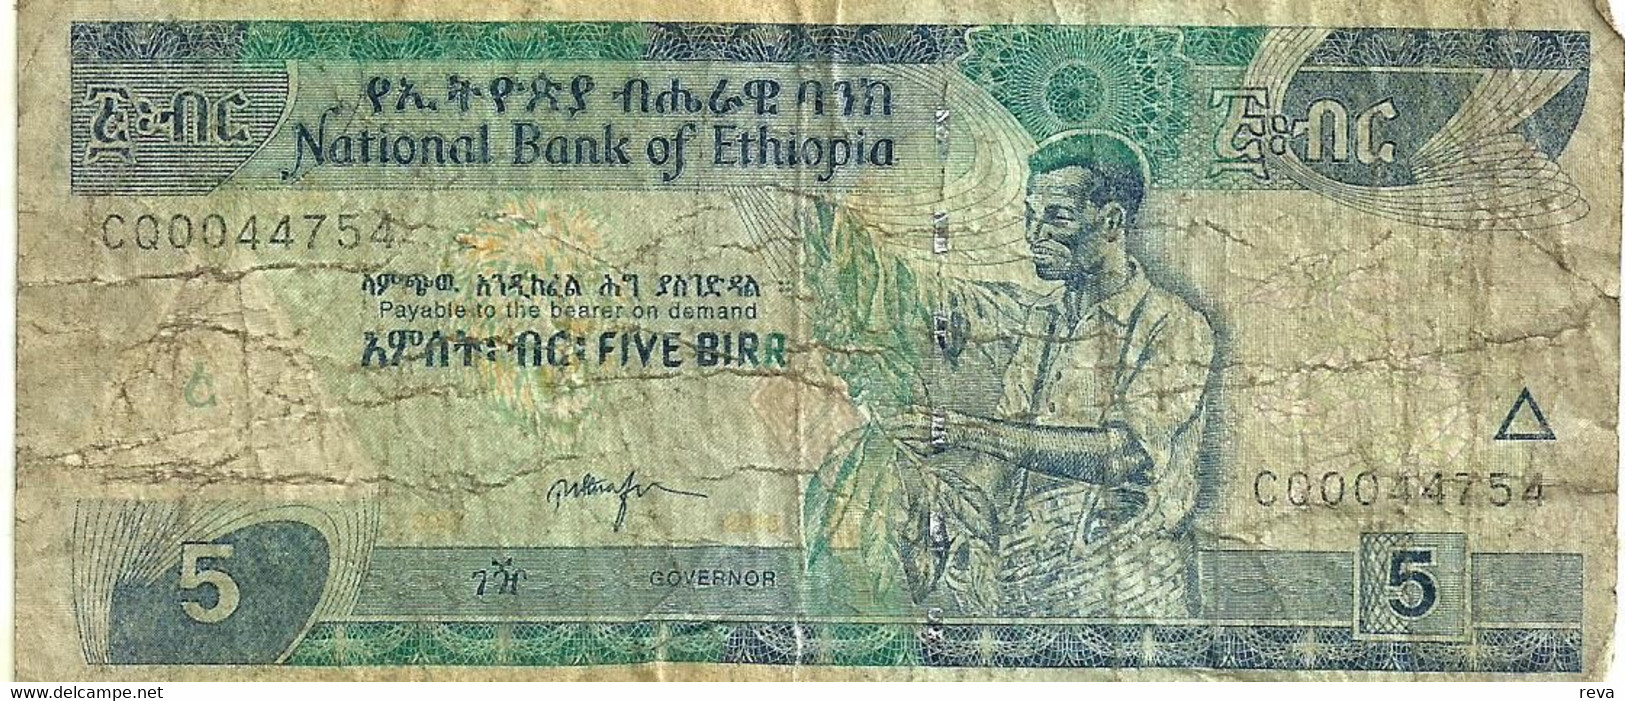 ETHIOPIA 5 BIRR BLUE  MAN FRONT & LANDSCAPE BACK ND(2000)P.47a SIG7. VG READ DESCRIPTION - Ethiopie